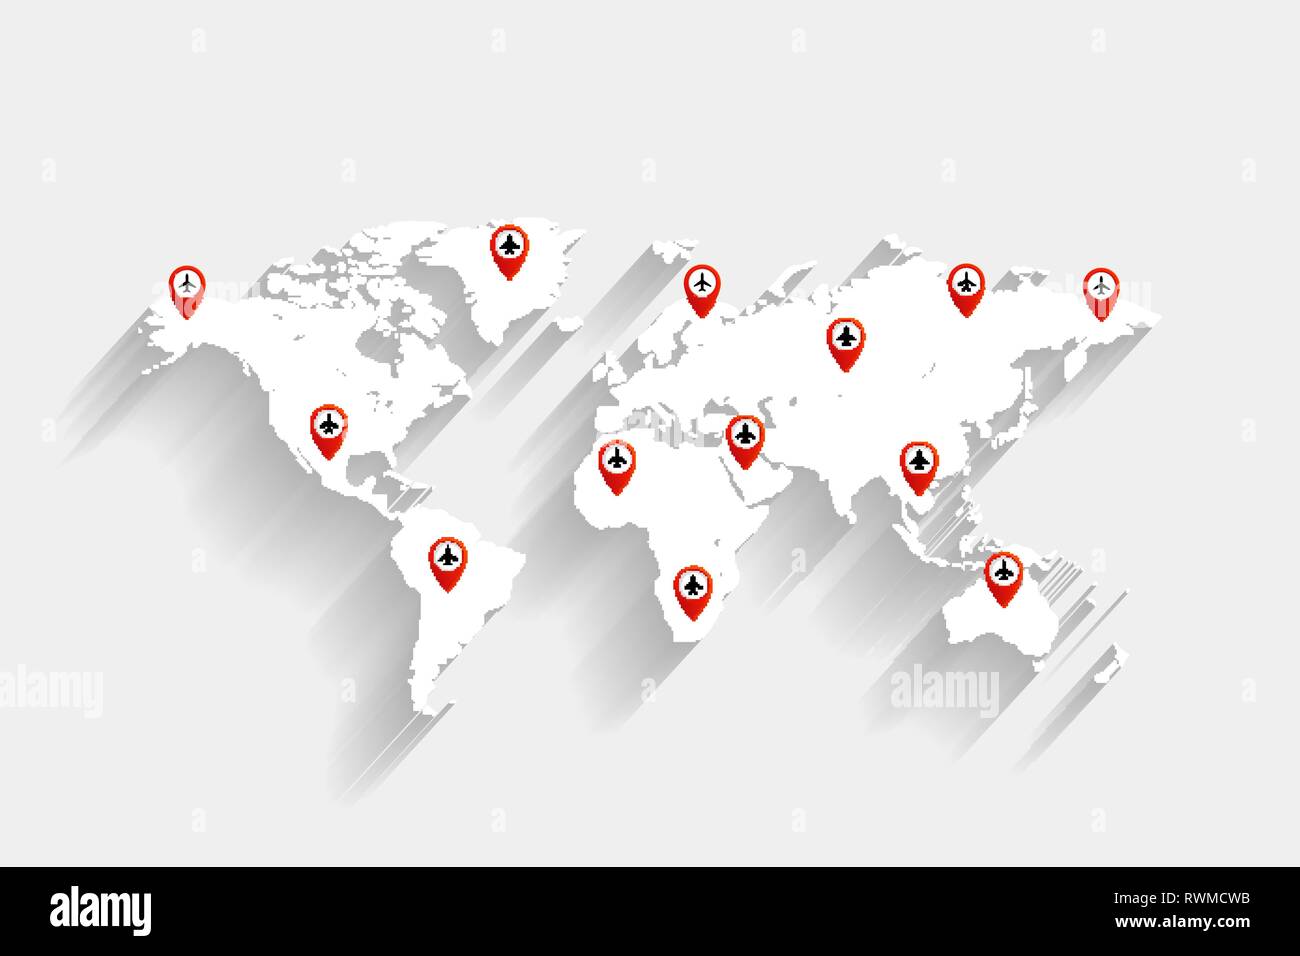 Flughafen und Flugzeug Routen auf Weiß Weltkarte, Vektor, Abbildung, eps 10-Datei Stock Vektor